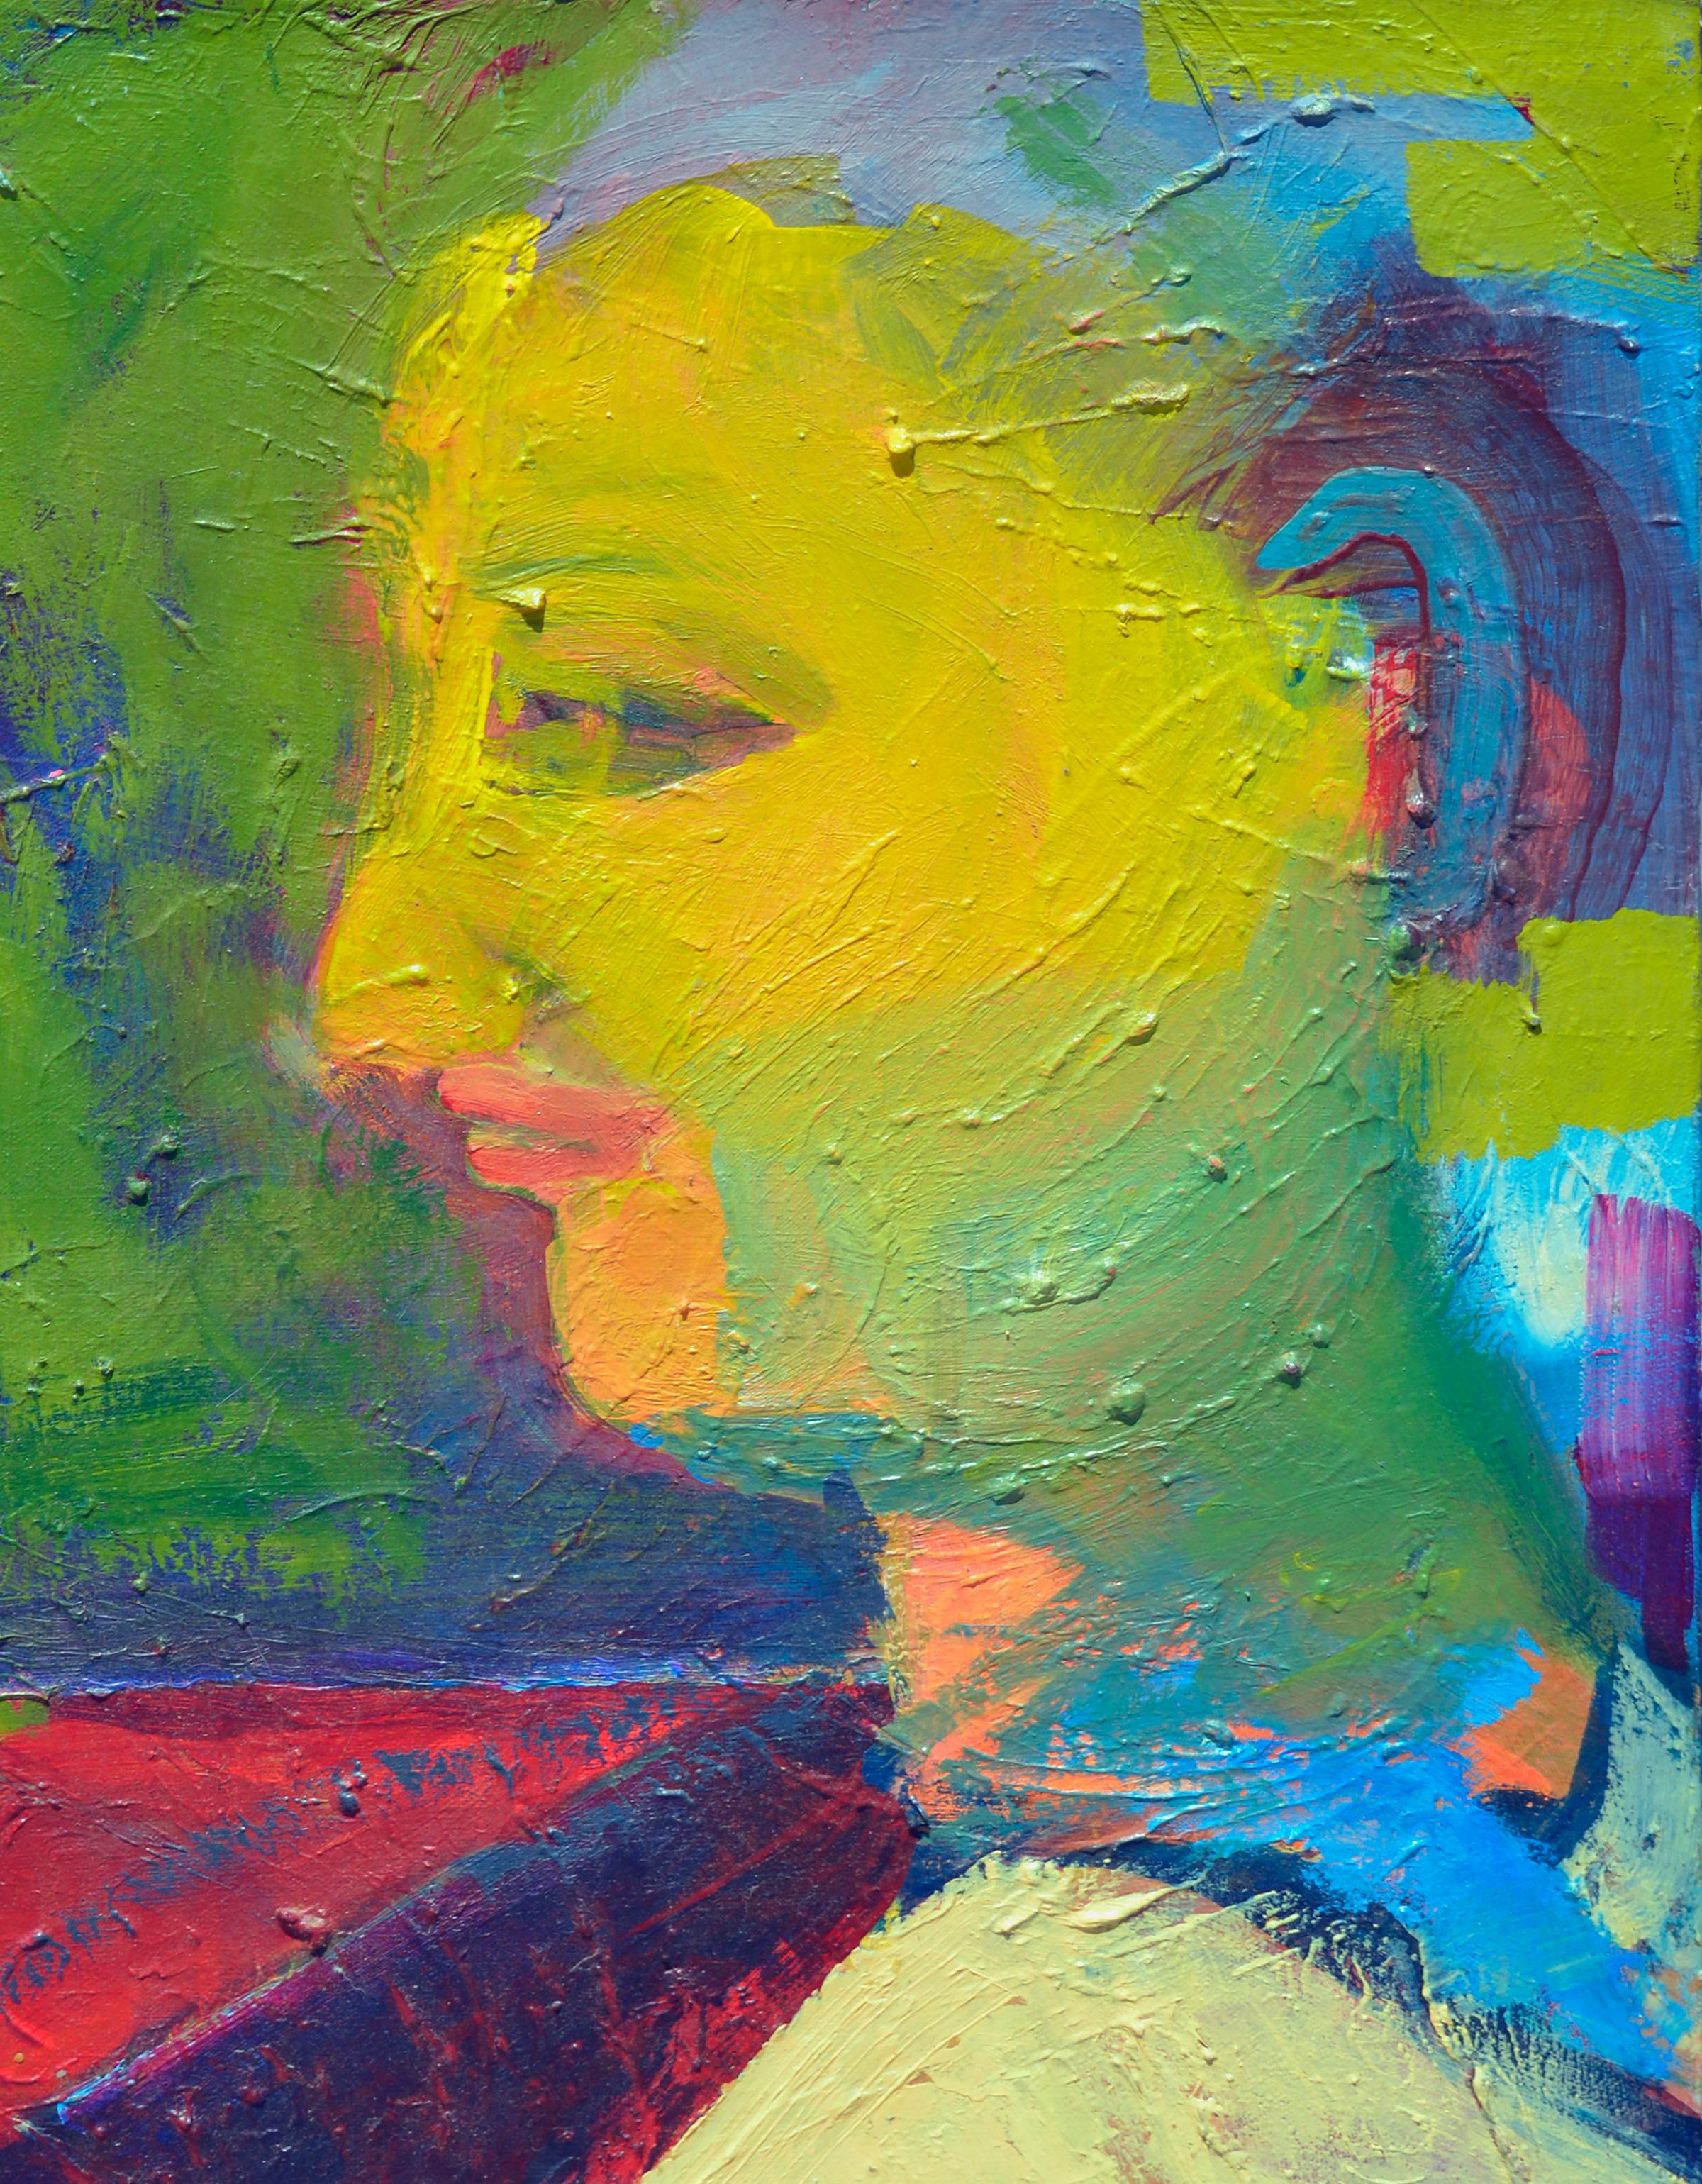 Fauvistisches abstrakt-expressionistisches Porträt, Kind in Hühnergarbe (Fauvismus), Painting, von Kristin Cohen